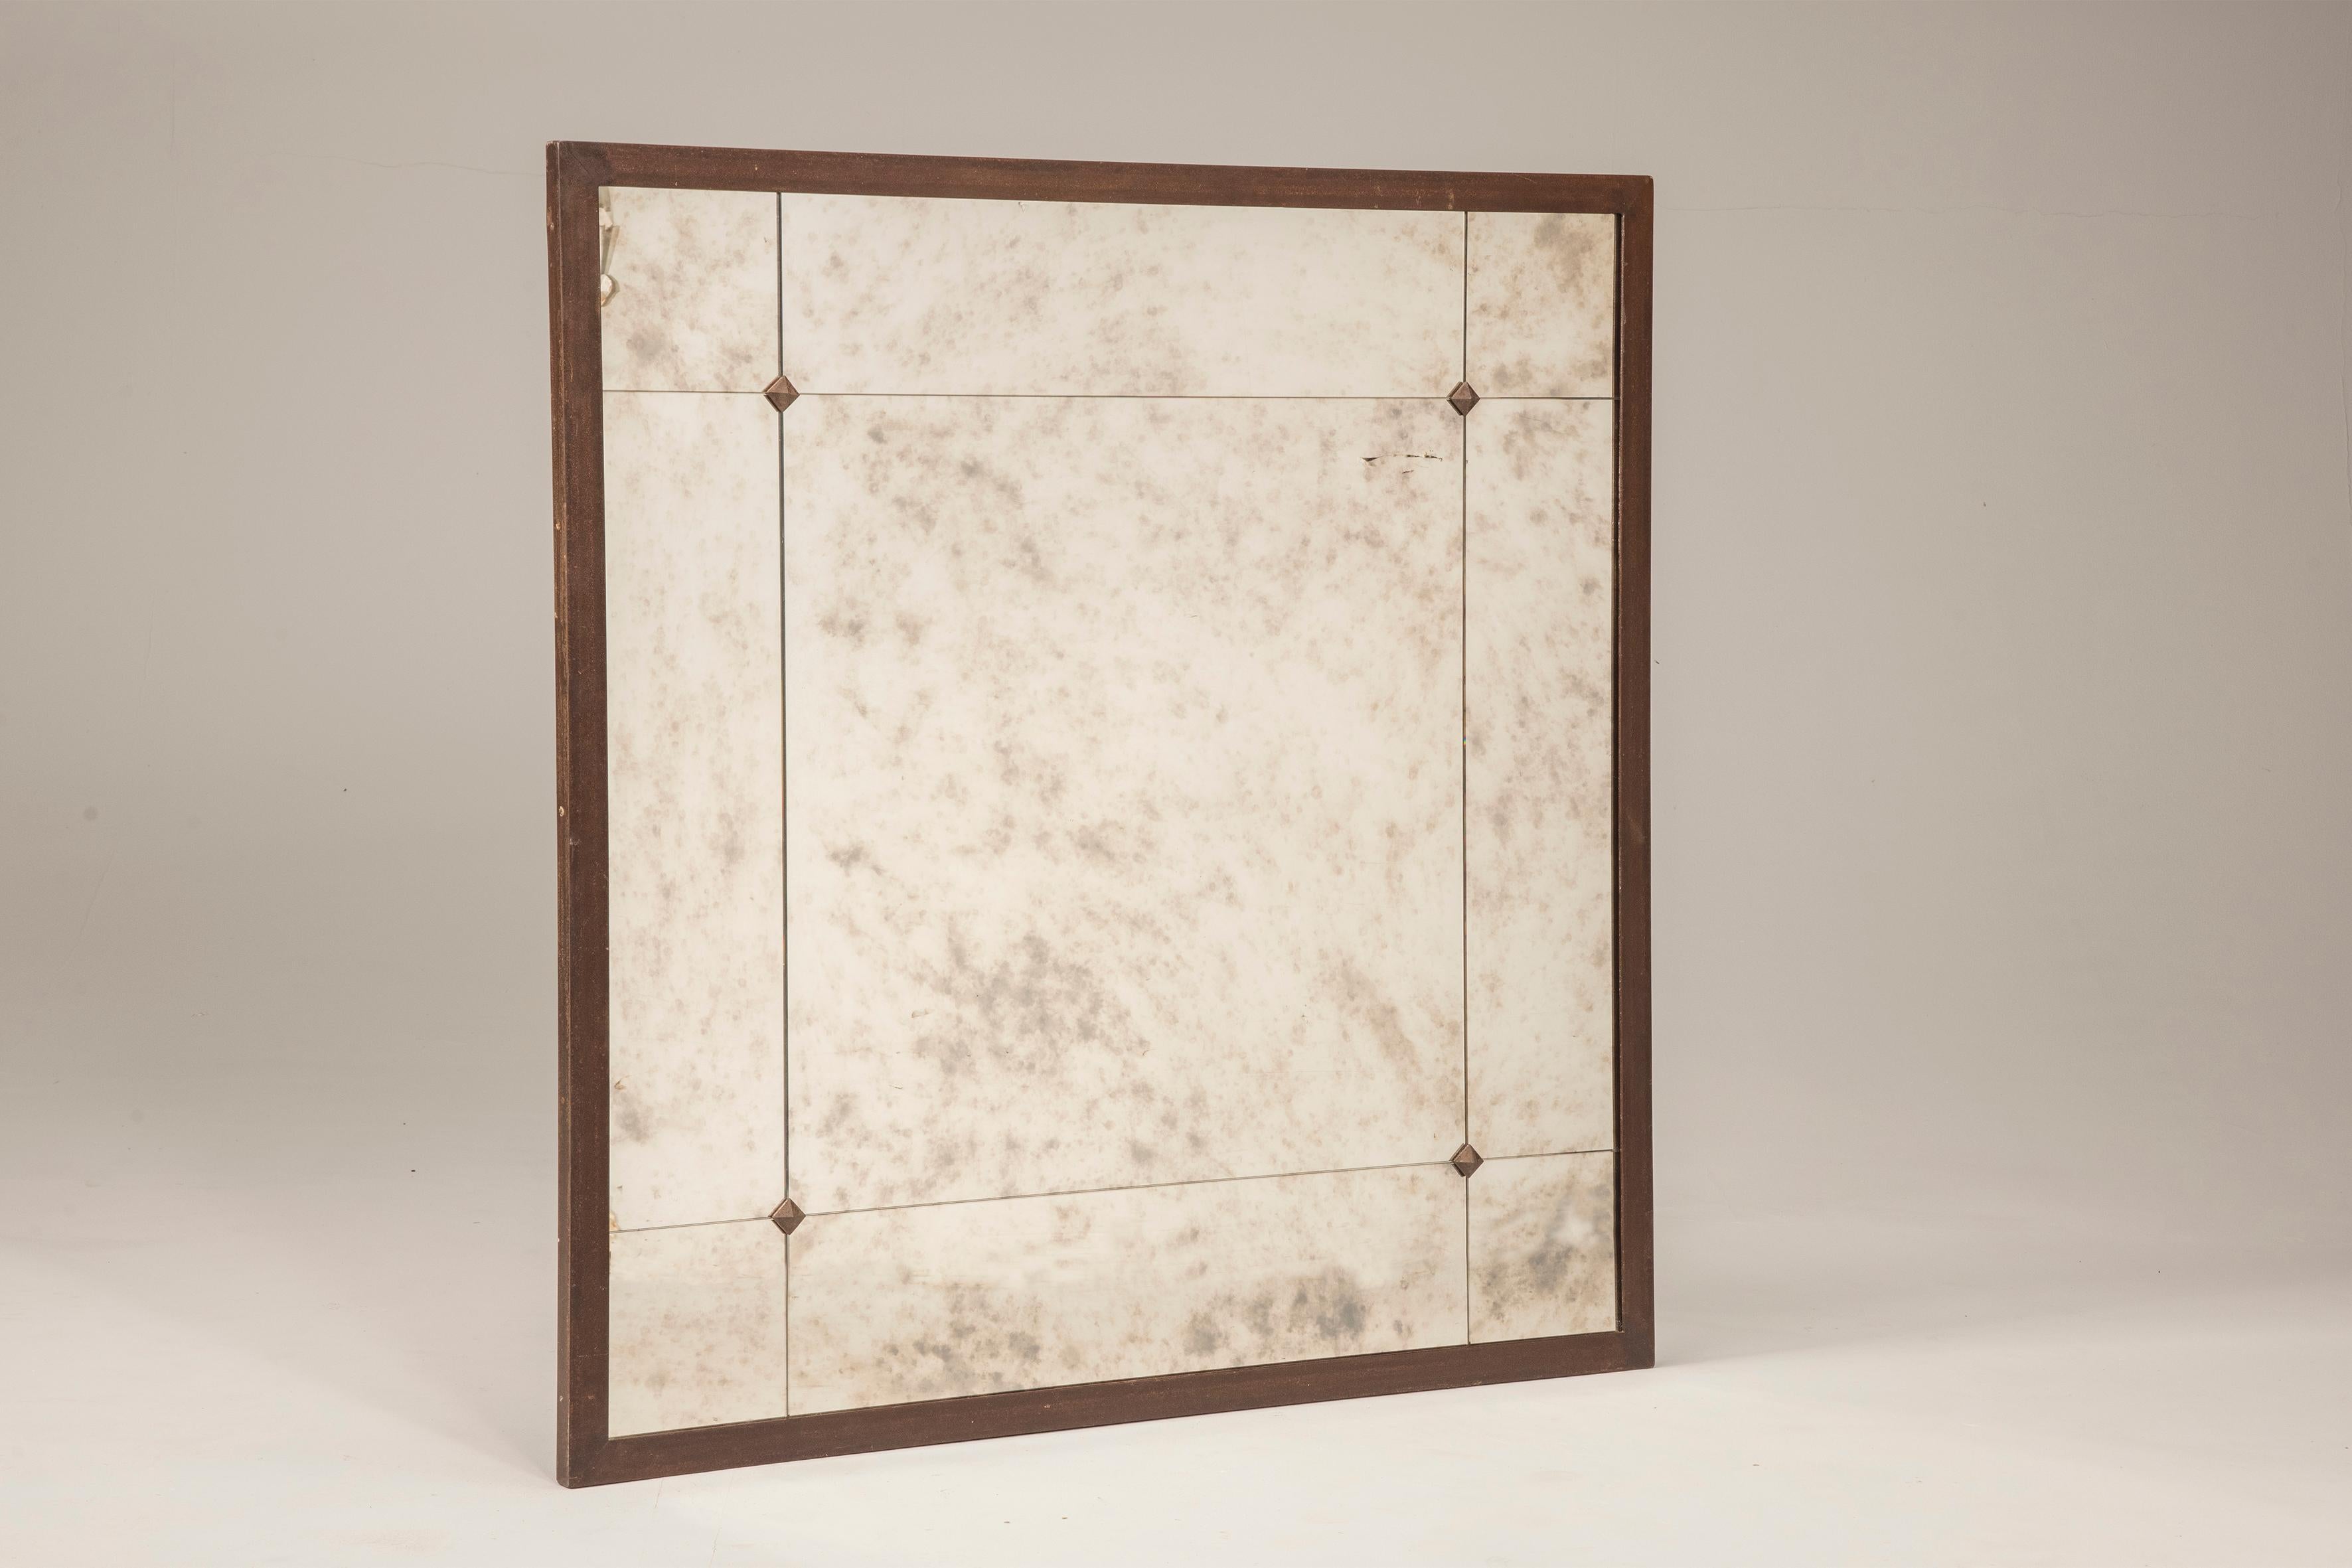 Miroir quadrillé personnalisable style industriel aspect vieilli cadre en fer rouillé avec verre effet vieilli et clous. Ici 140 x 140 cm, 55